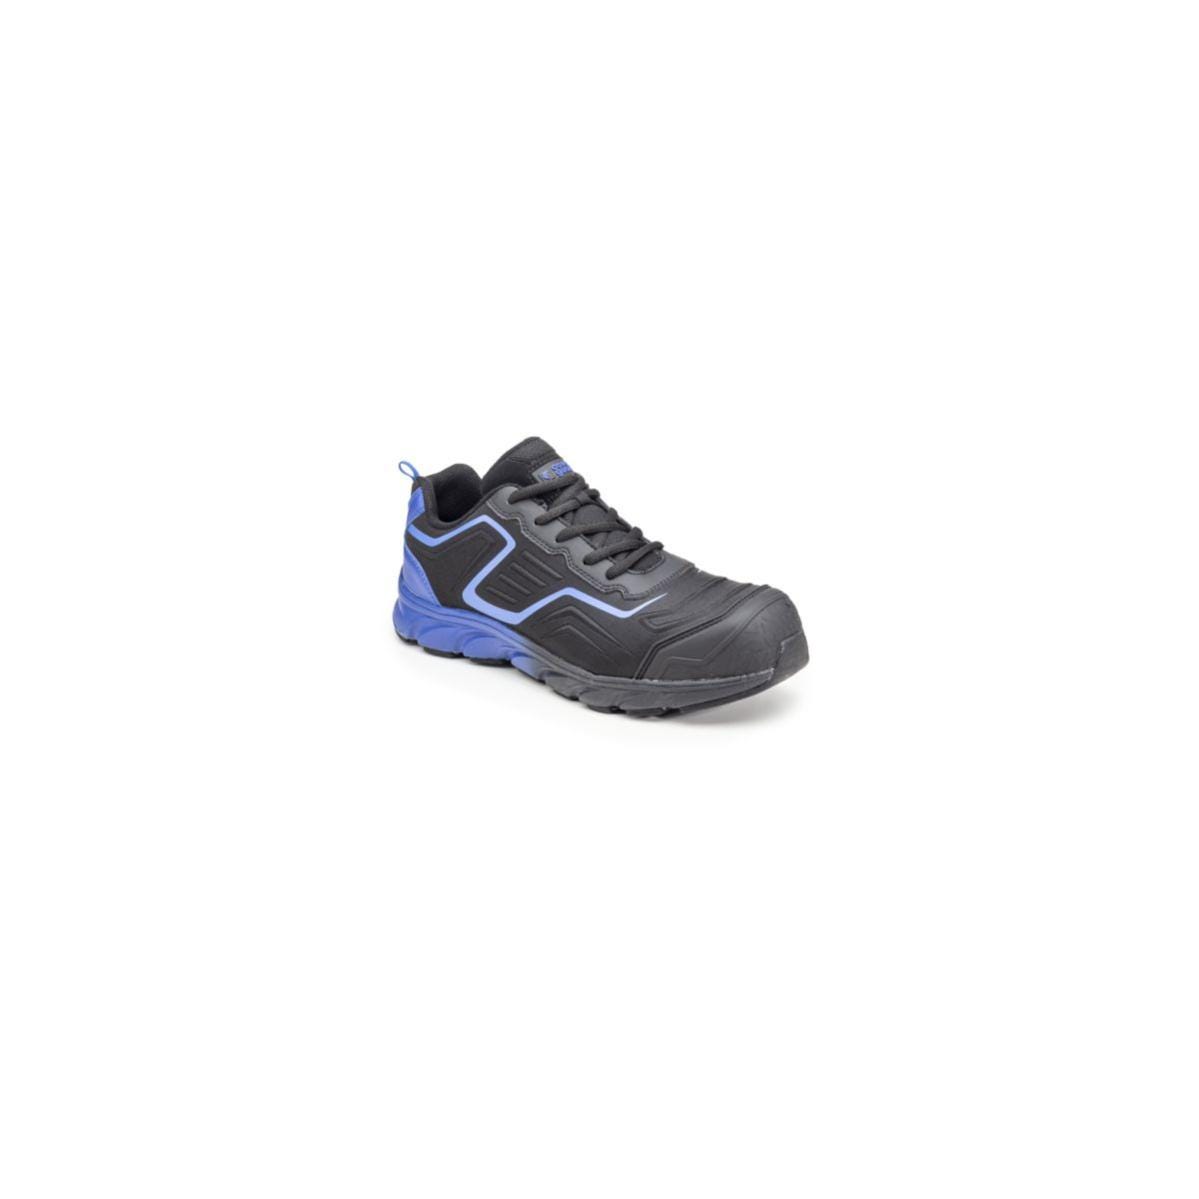 Chaussures de sécurité S3 SAPHIR Basse Maille Noir Bleu - COVERGUARD - Taille 45 0